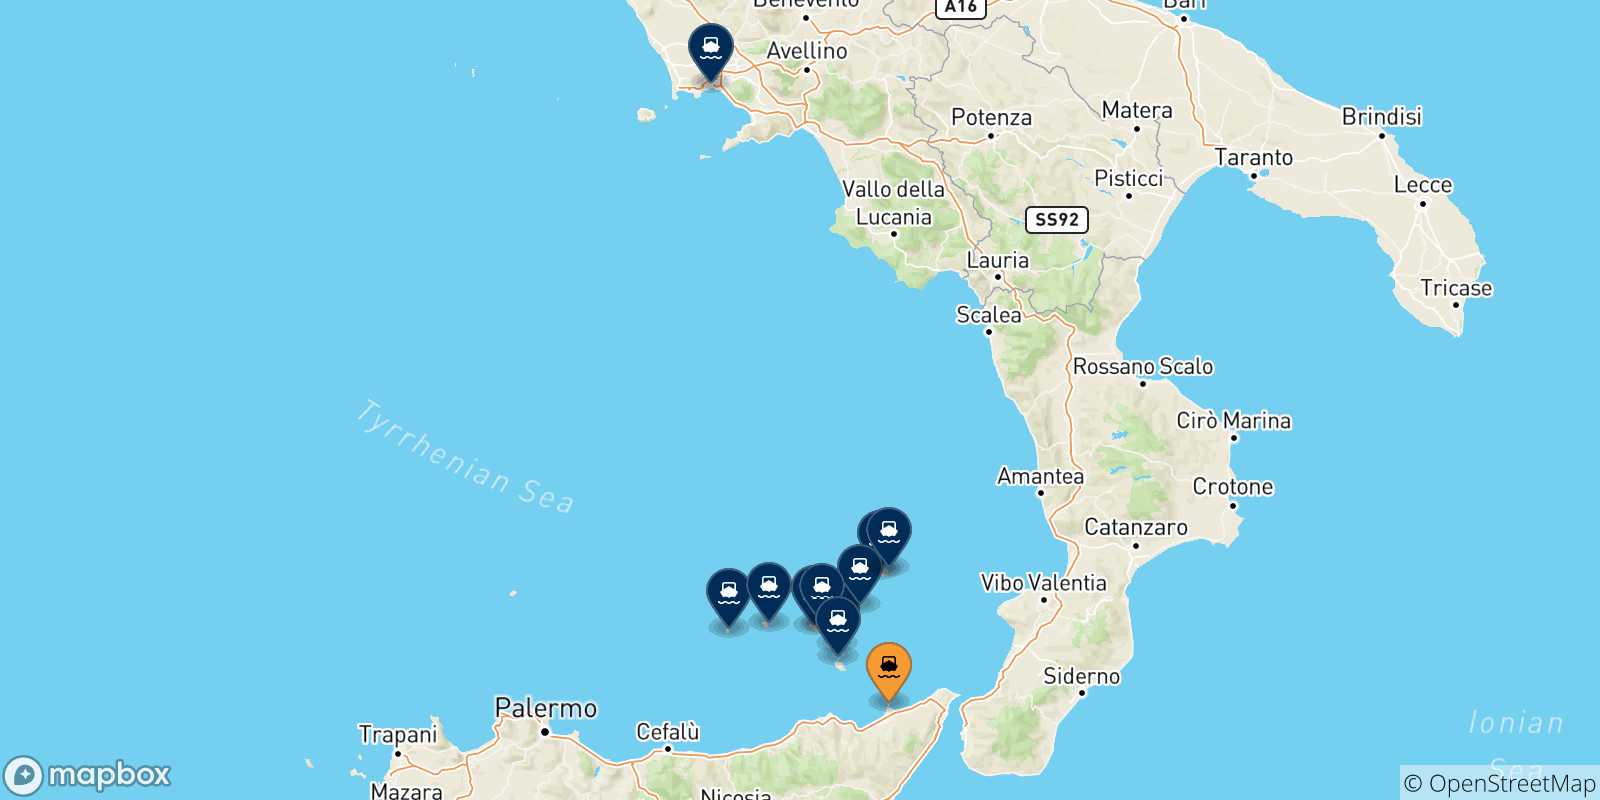 Mappa delle possibili rotte tra Milazzo e l'Italia